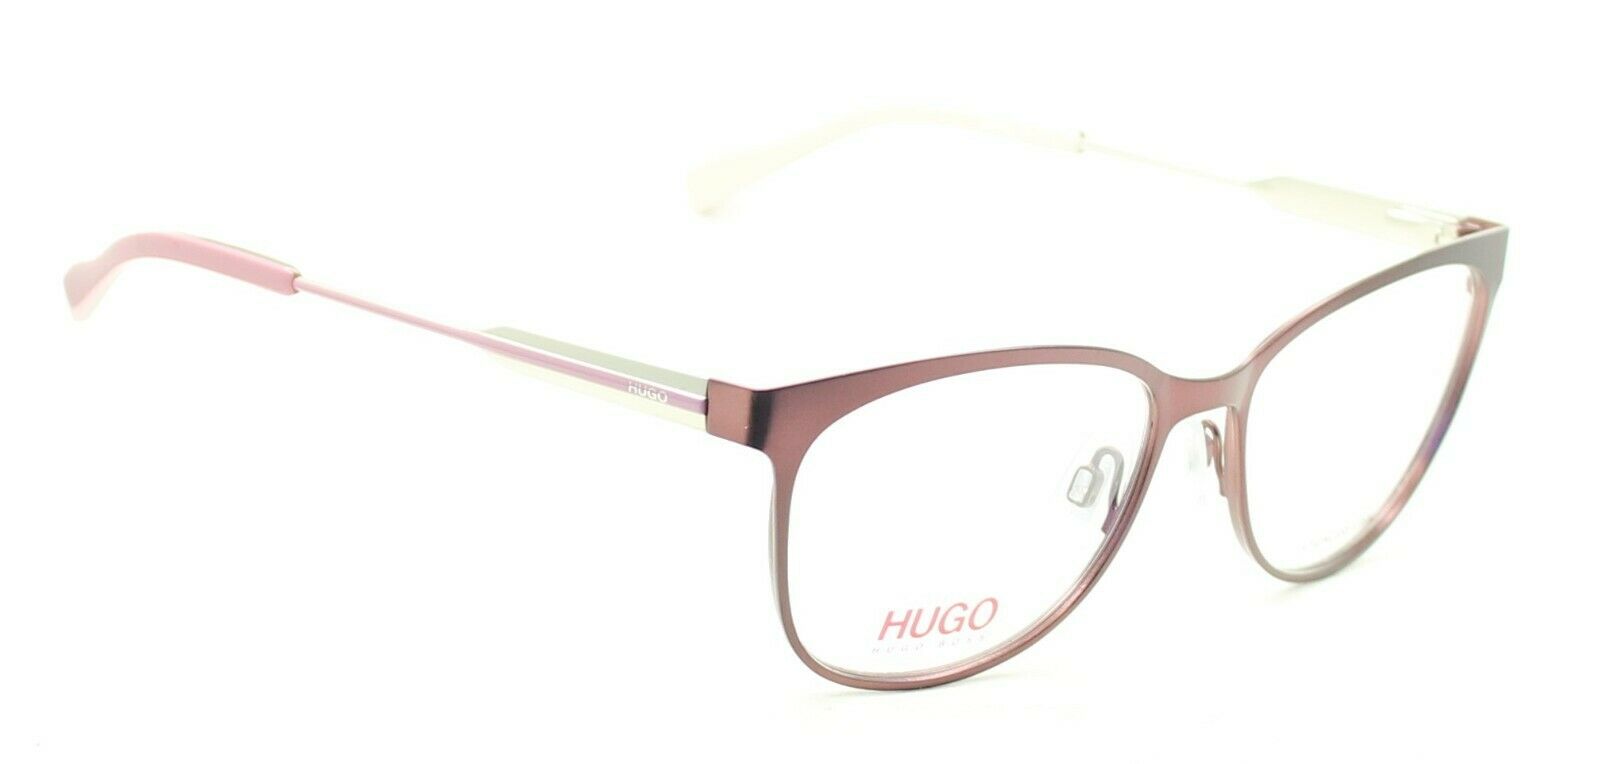 HUGO BOSS HG 0233 7BL 54mm Eyewear FRAMES Glasses RX Optical Eyeglasses - New